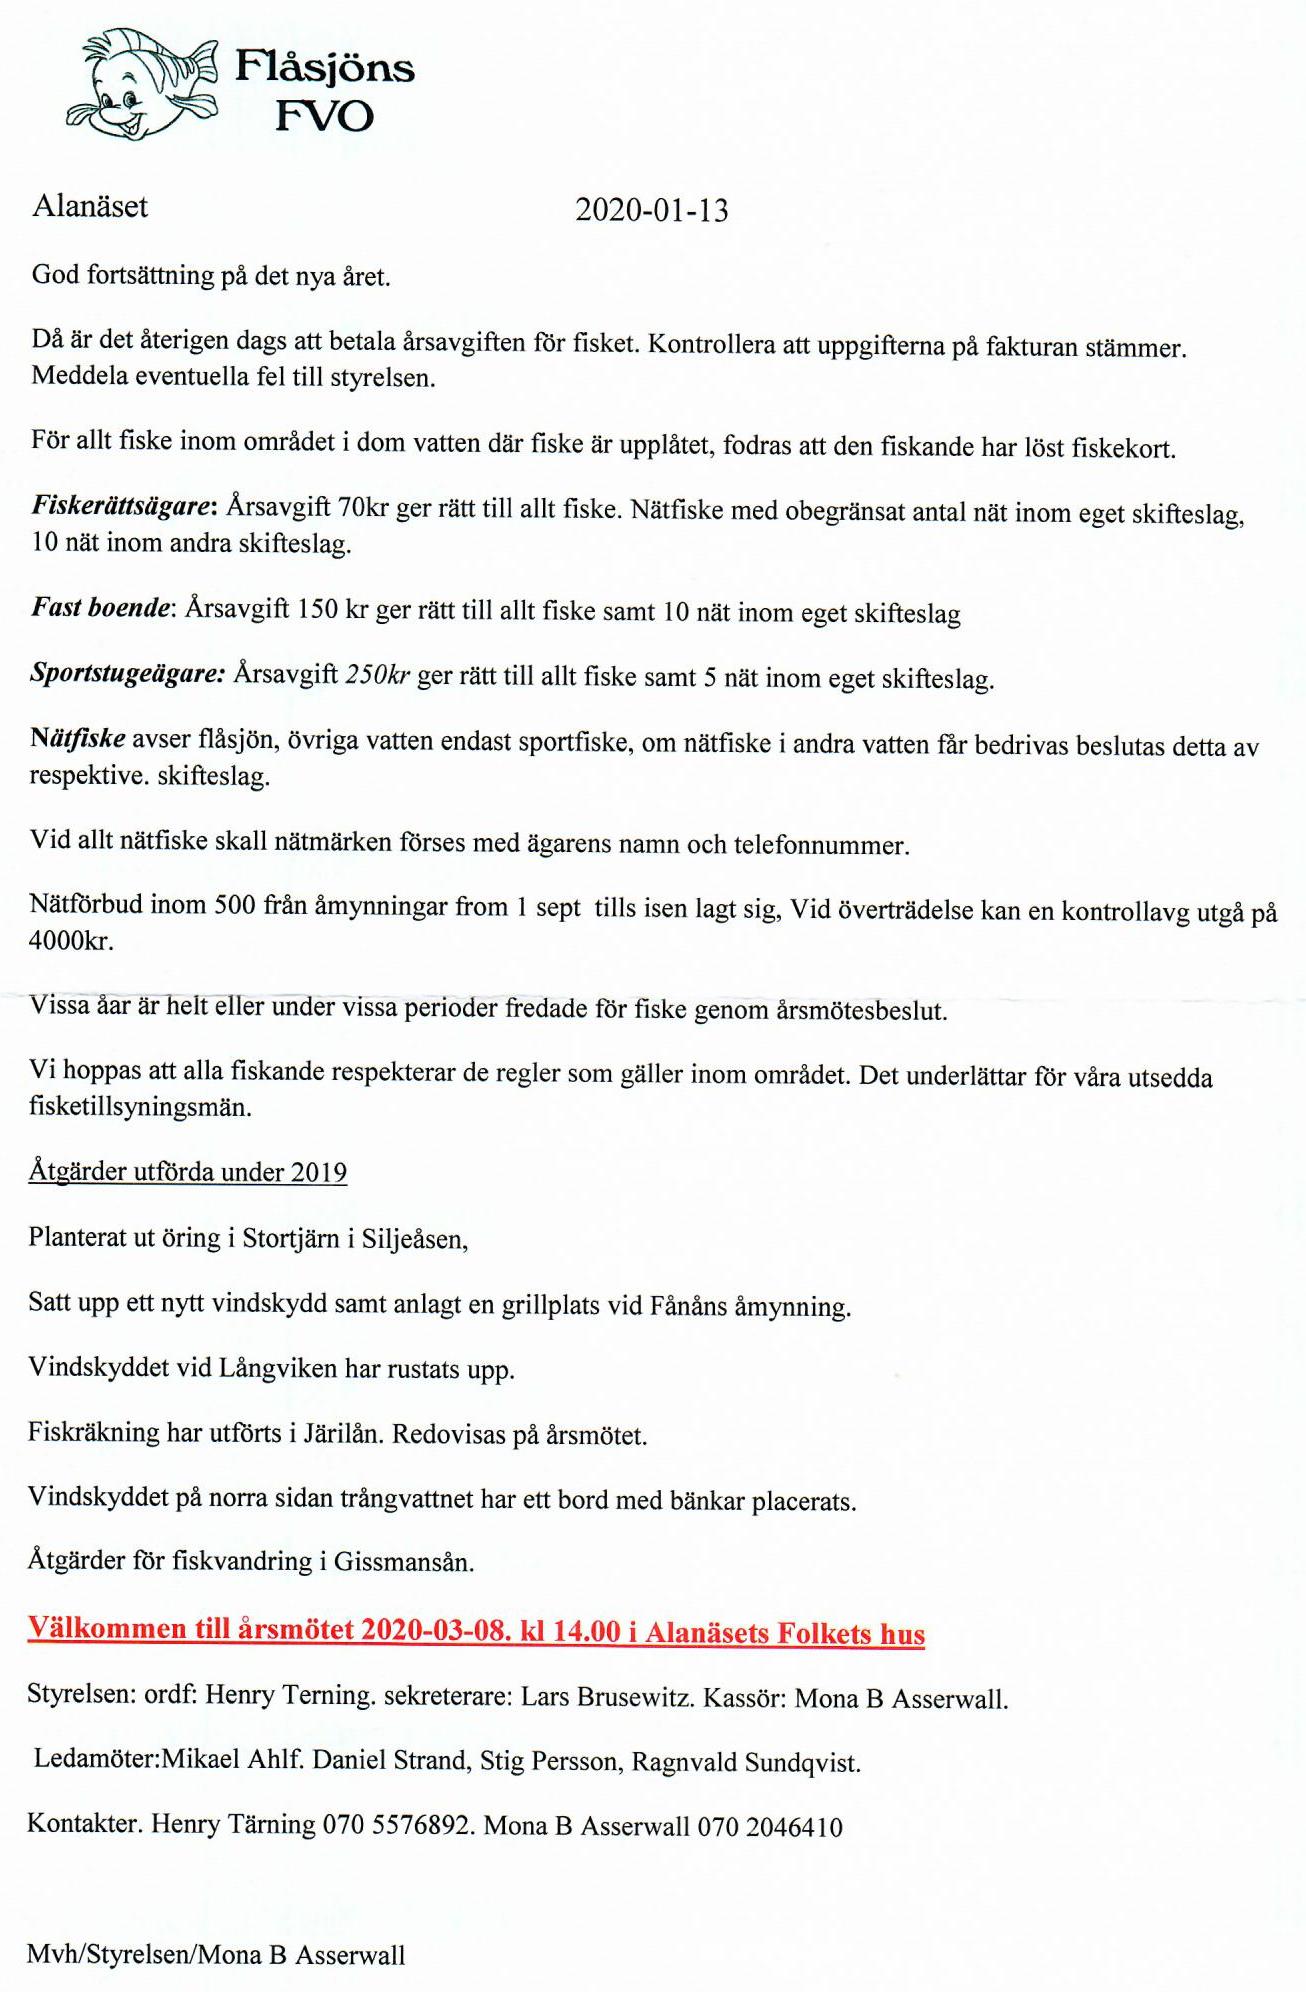 Flåsjöns_FVO/Flåsjöns FVO info 2020.jpg